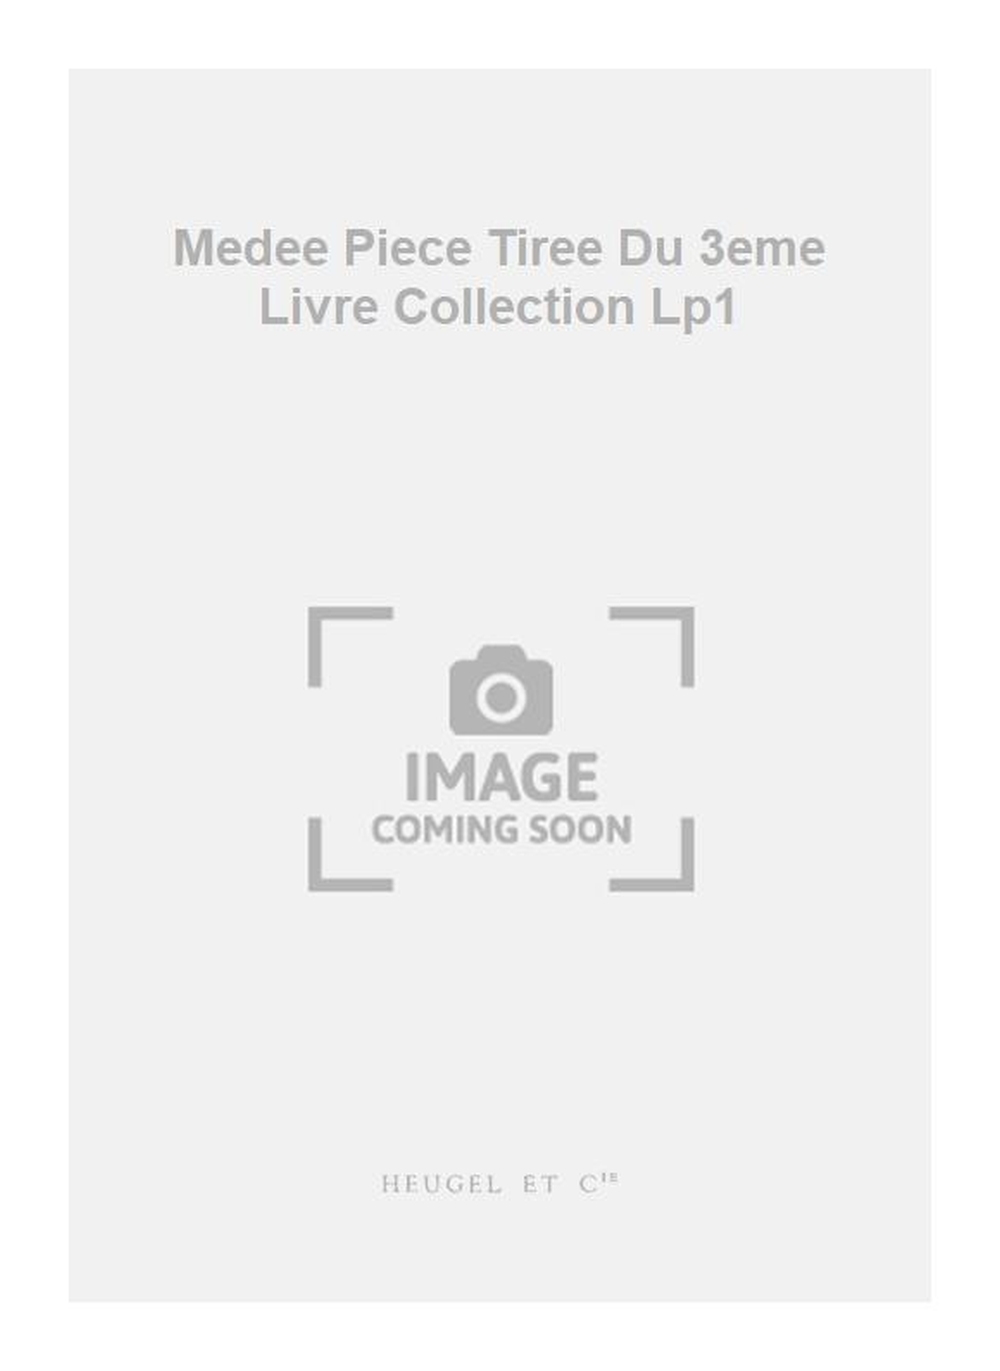 Jacques du Phly: Medee Piece Tiree Du 3eme Livre Collection Lp1